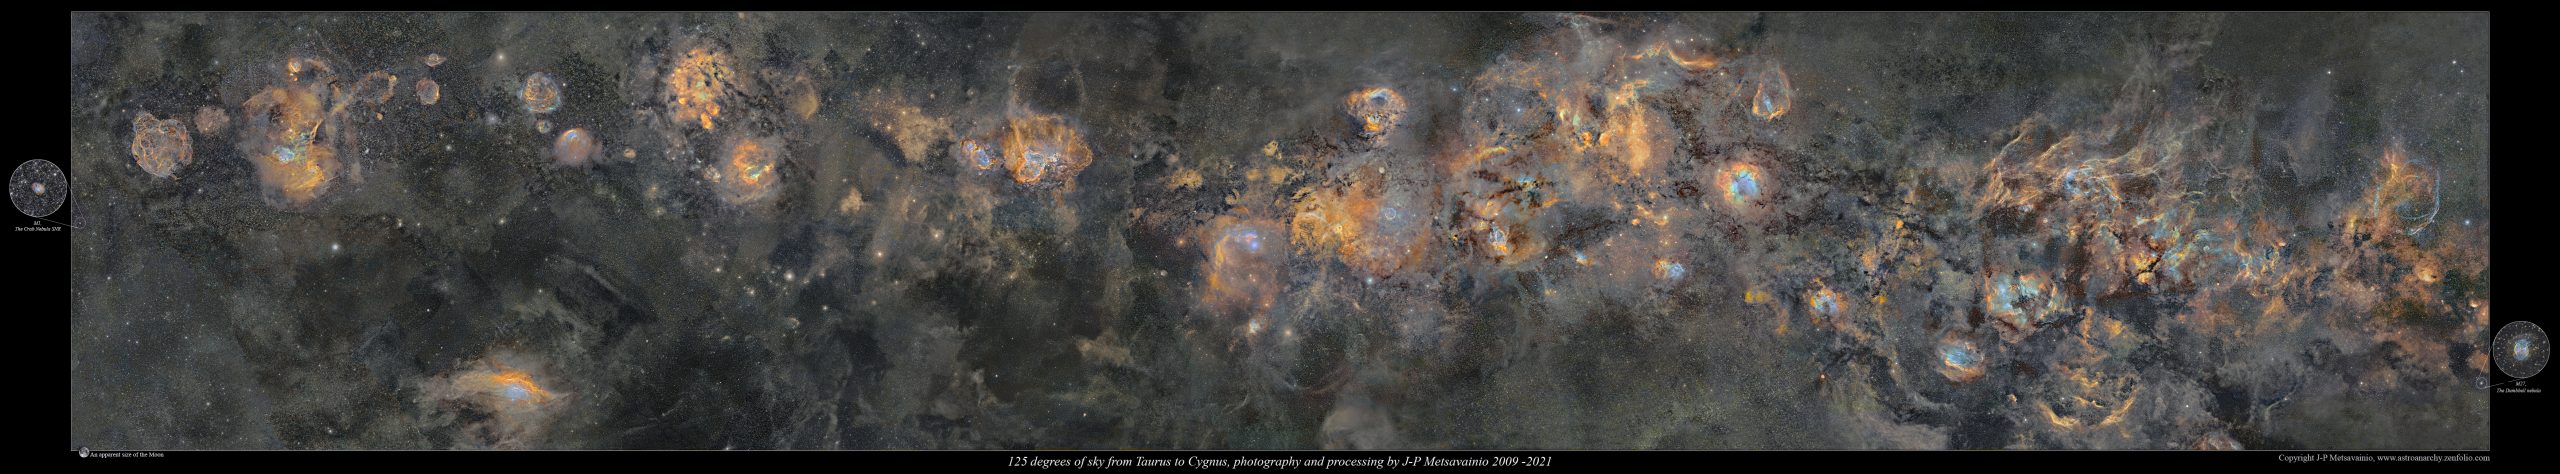 Фотограф показал впечатляющее фото Млечного пути